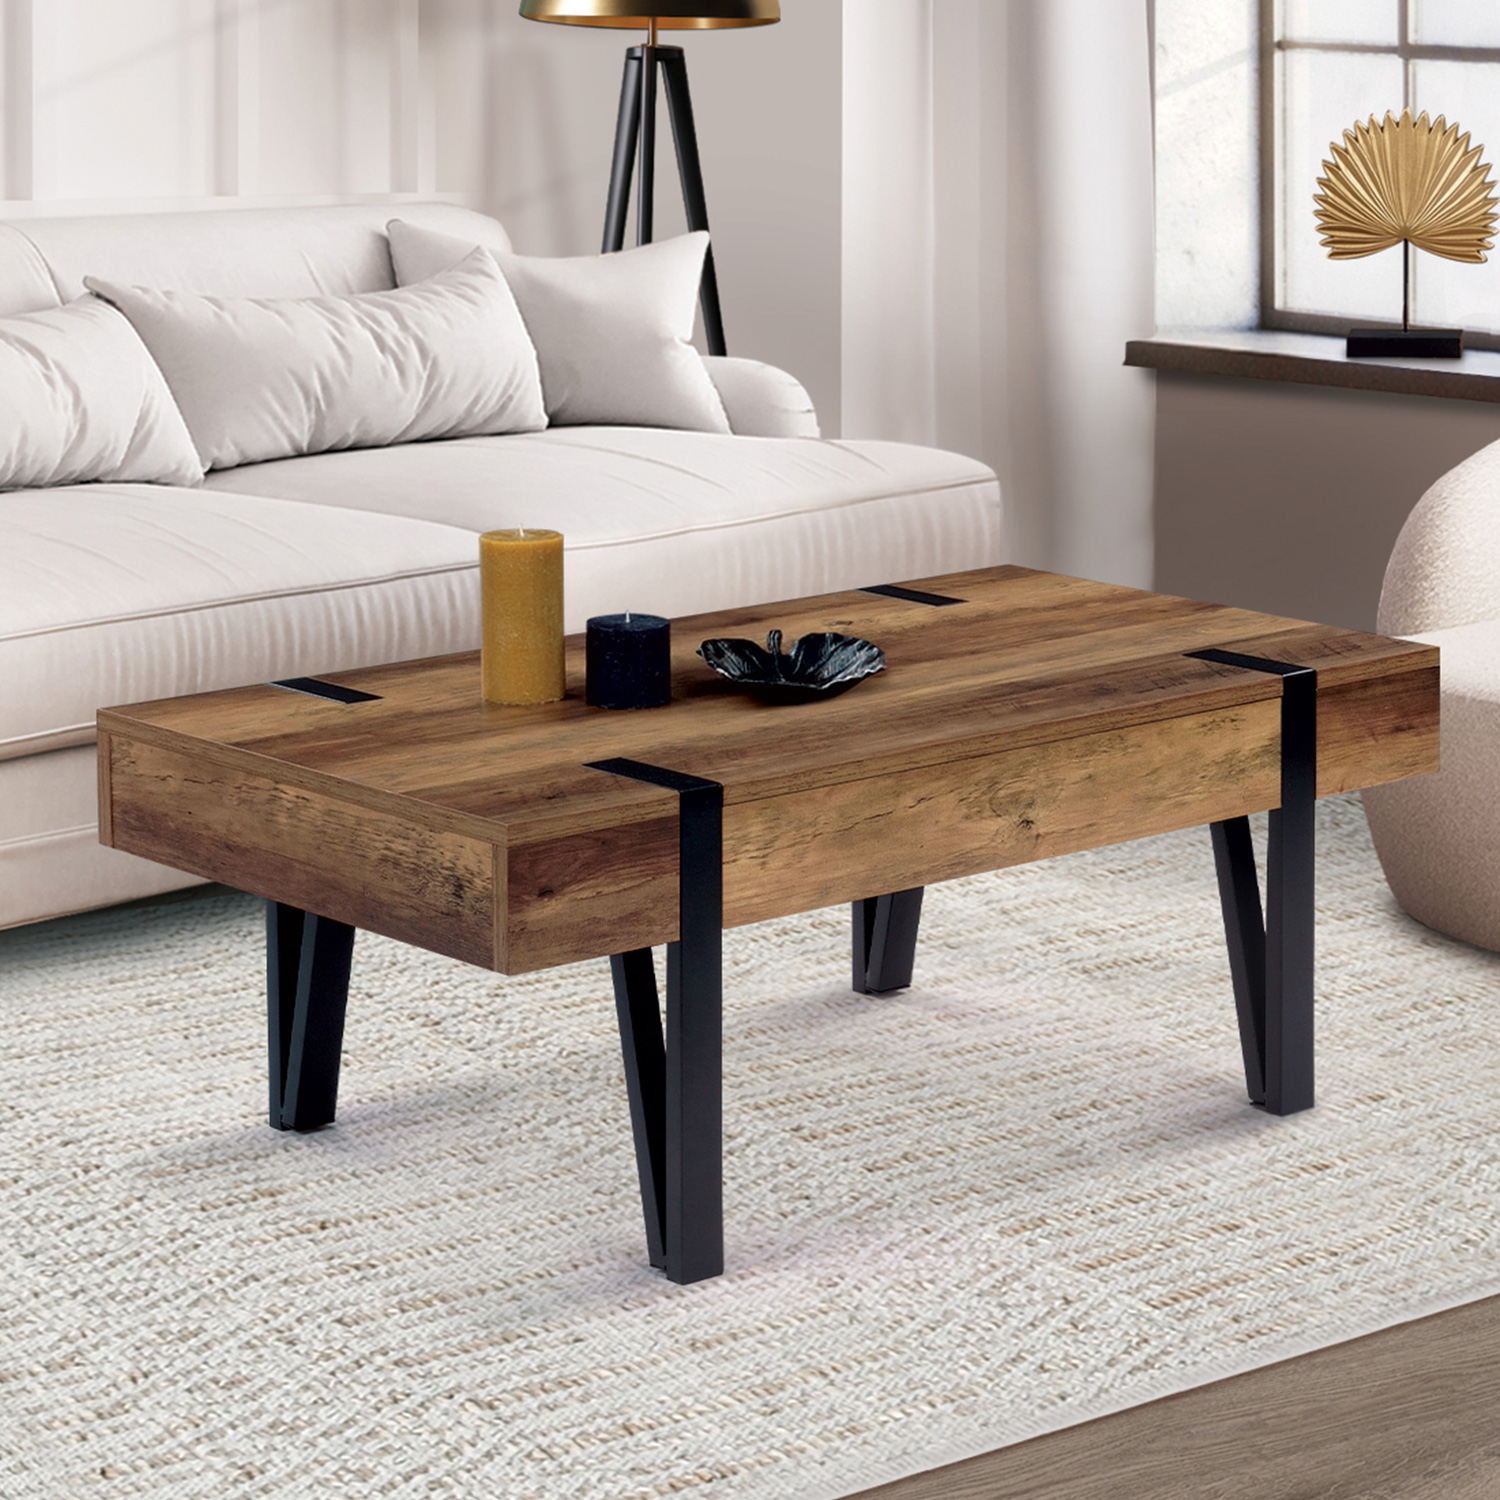 IDMARKET Ensemble meubles de salon buffet, table basse relevable et meuble  TV DETROIT design industriel - Cdiscount Maison